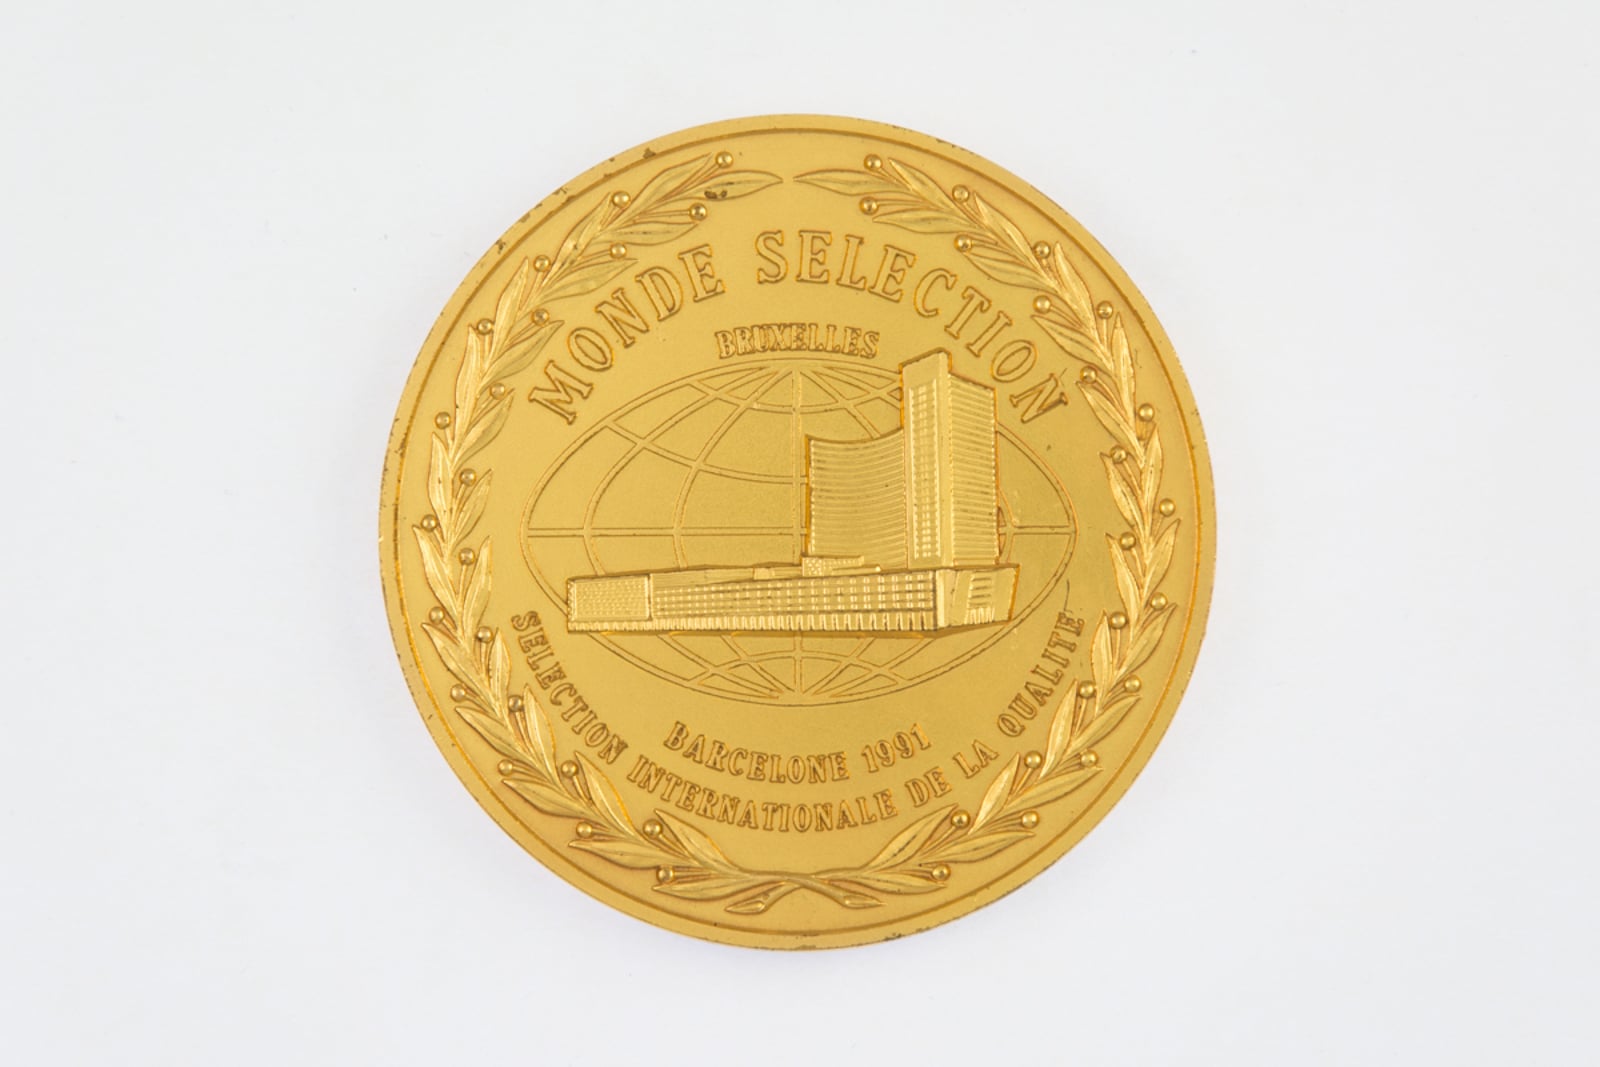 Monde Selection Bruxelles Grande Medaille d'Or 1991